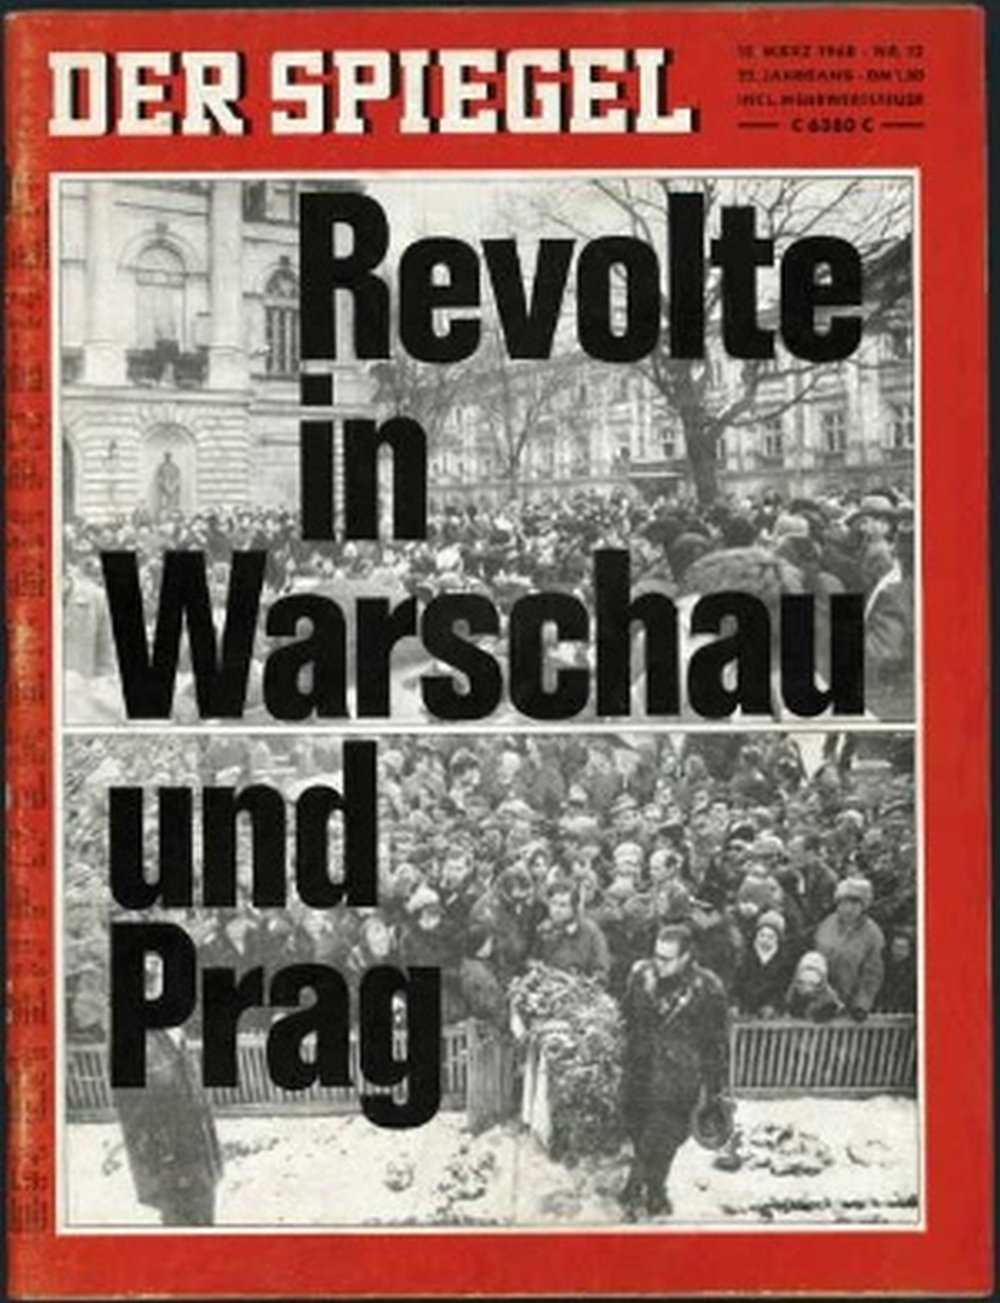 Обложка журнала "Шпигель" "Восстание в Варшаве и Праге". 1968 г.